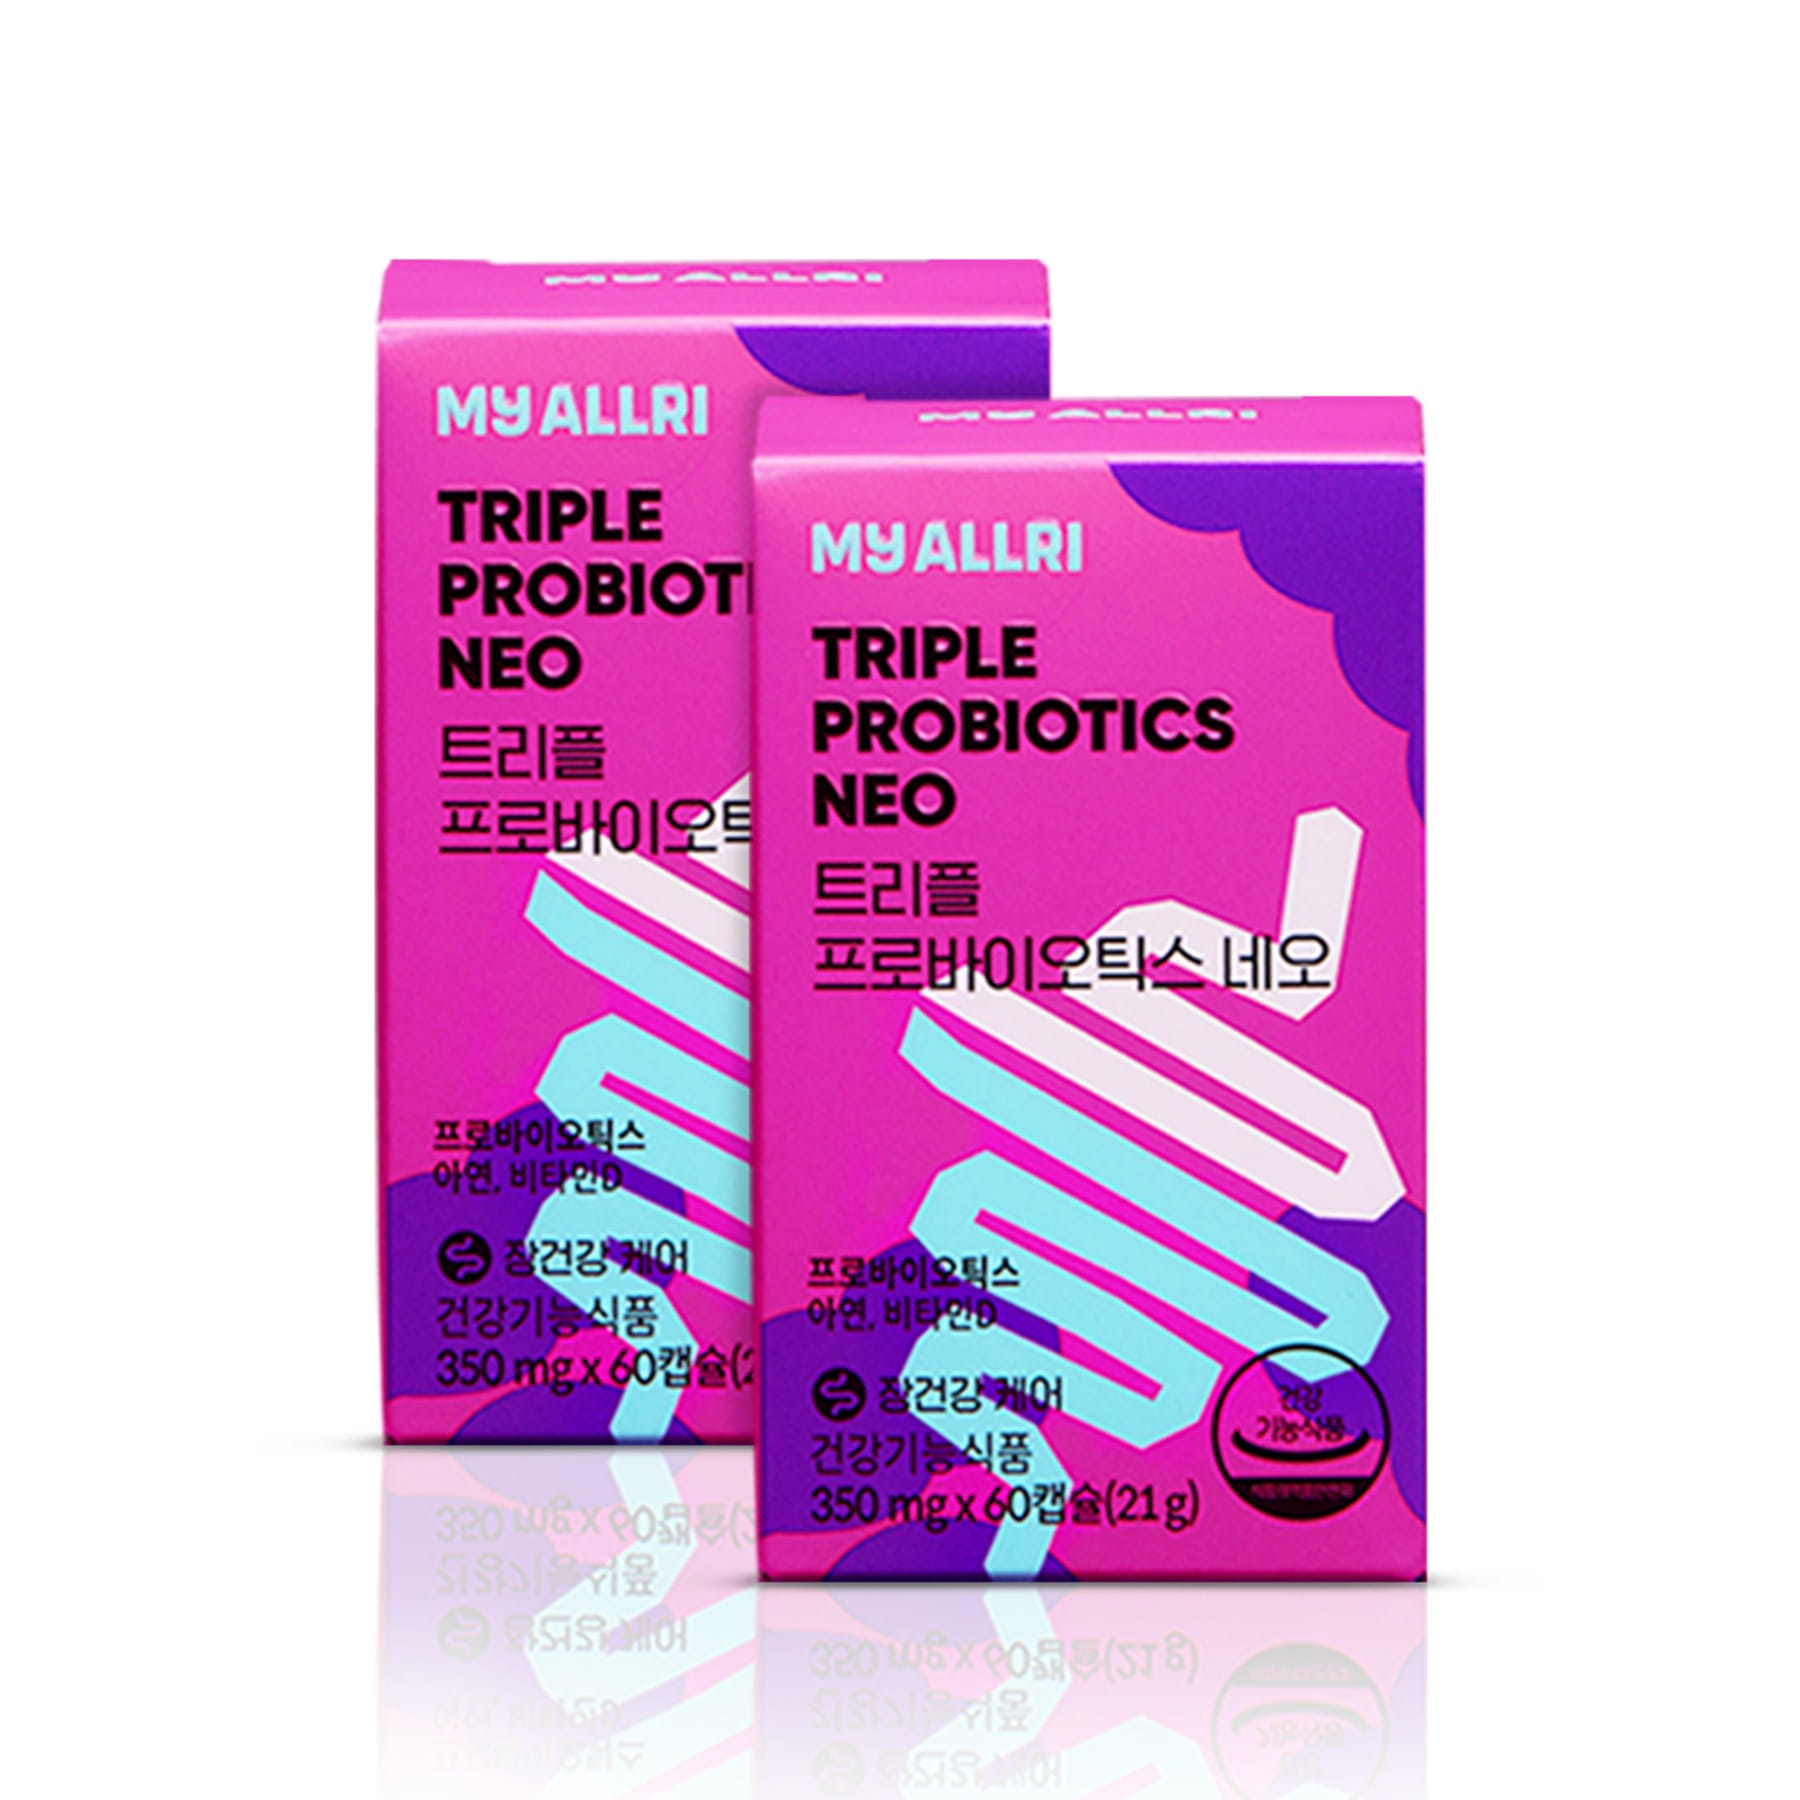 [10%] Triple Probiotics Neo 2ea for 4 Months